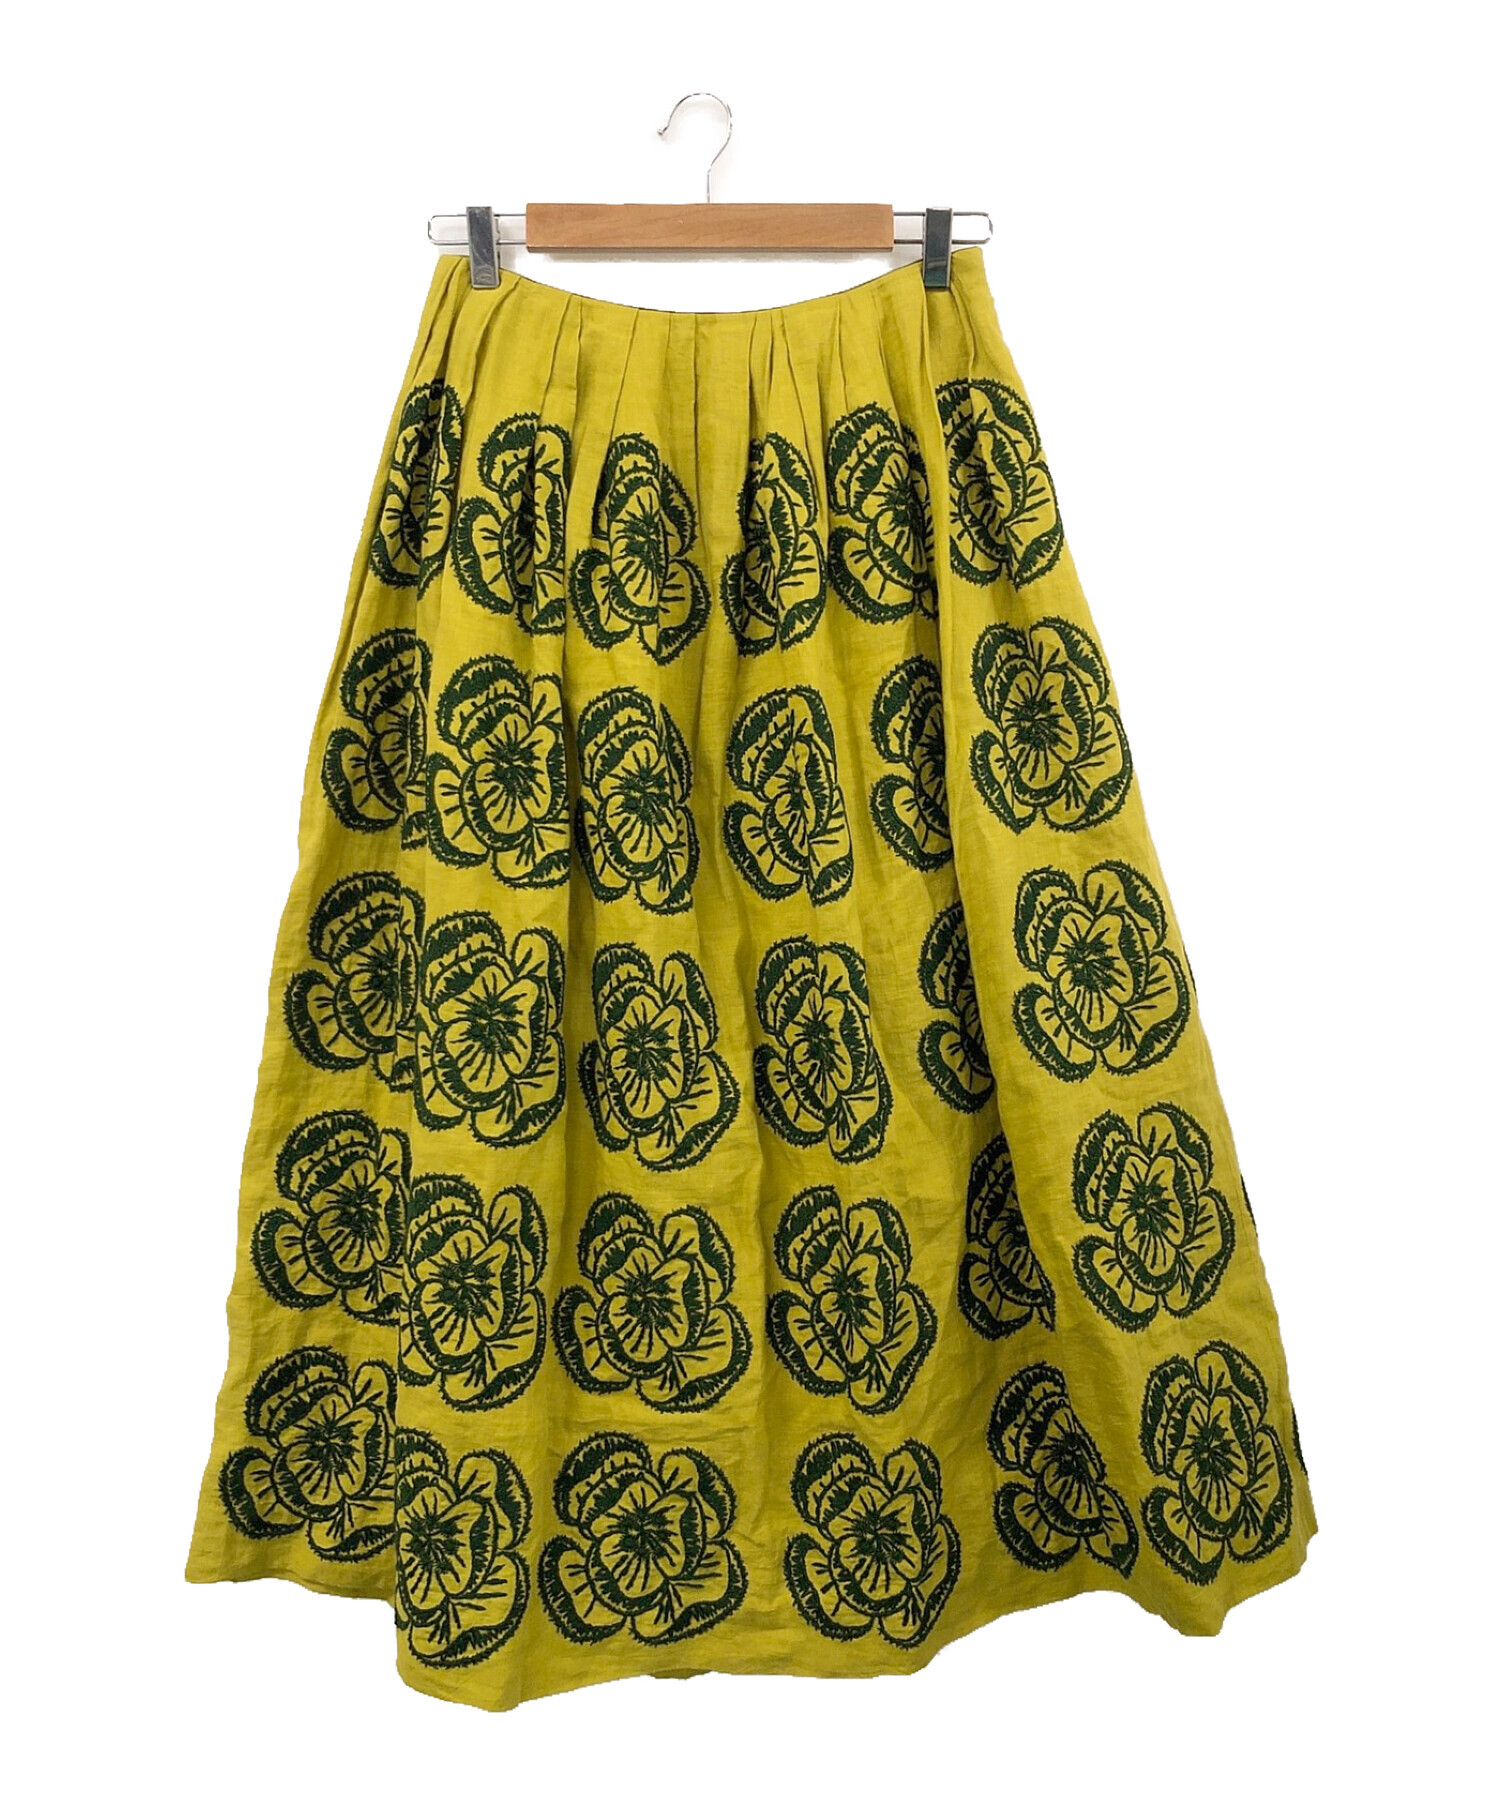 ミナペルホネン　刺繍スカートとても可愛いスカートです♪